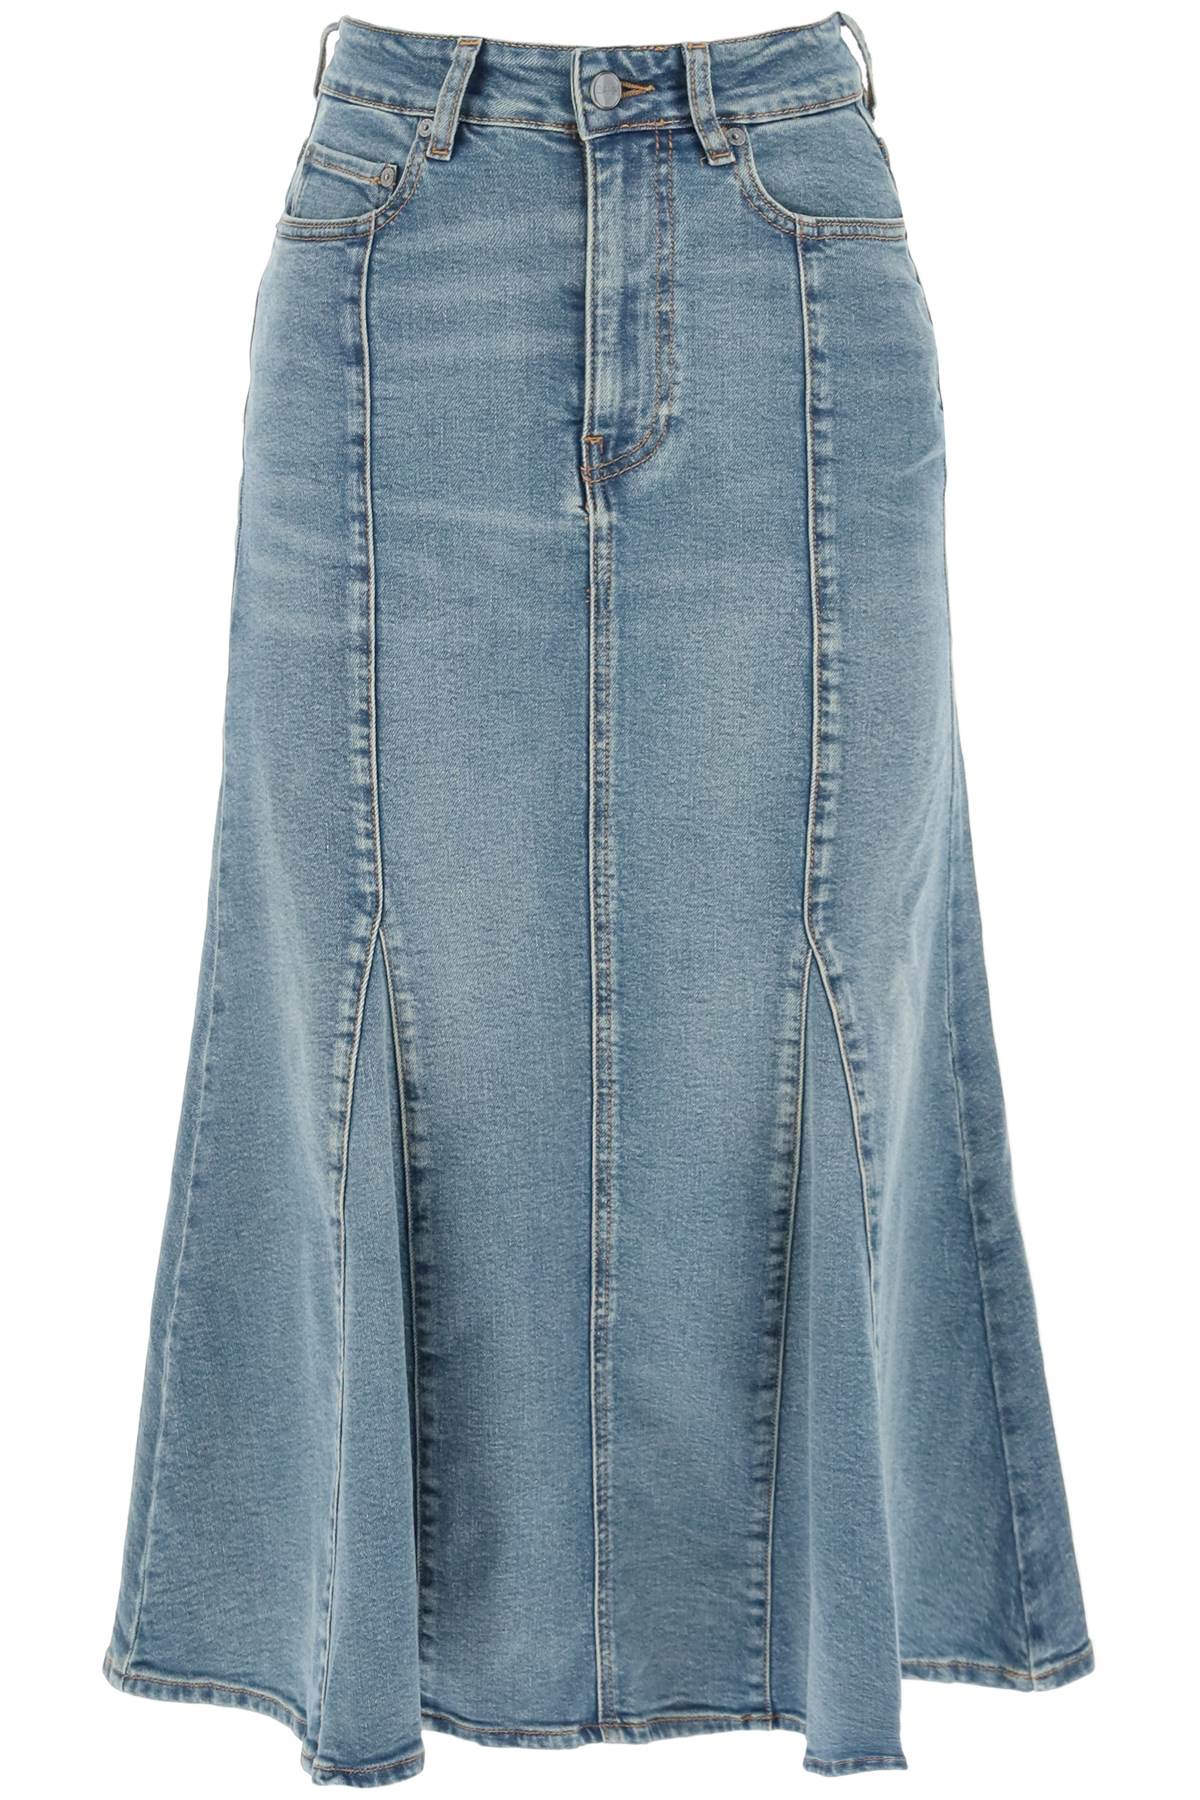 Shop Ganni Blue Denim Peplum Skirt